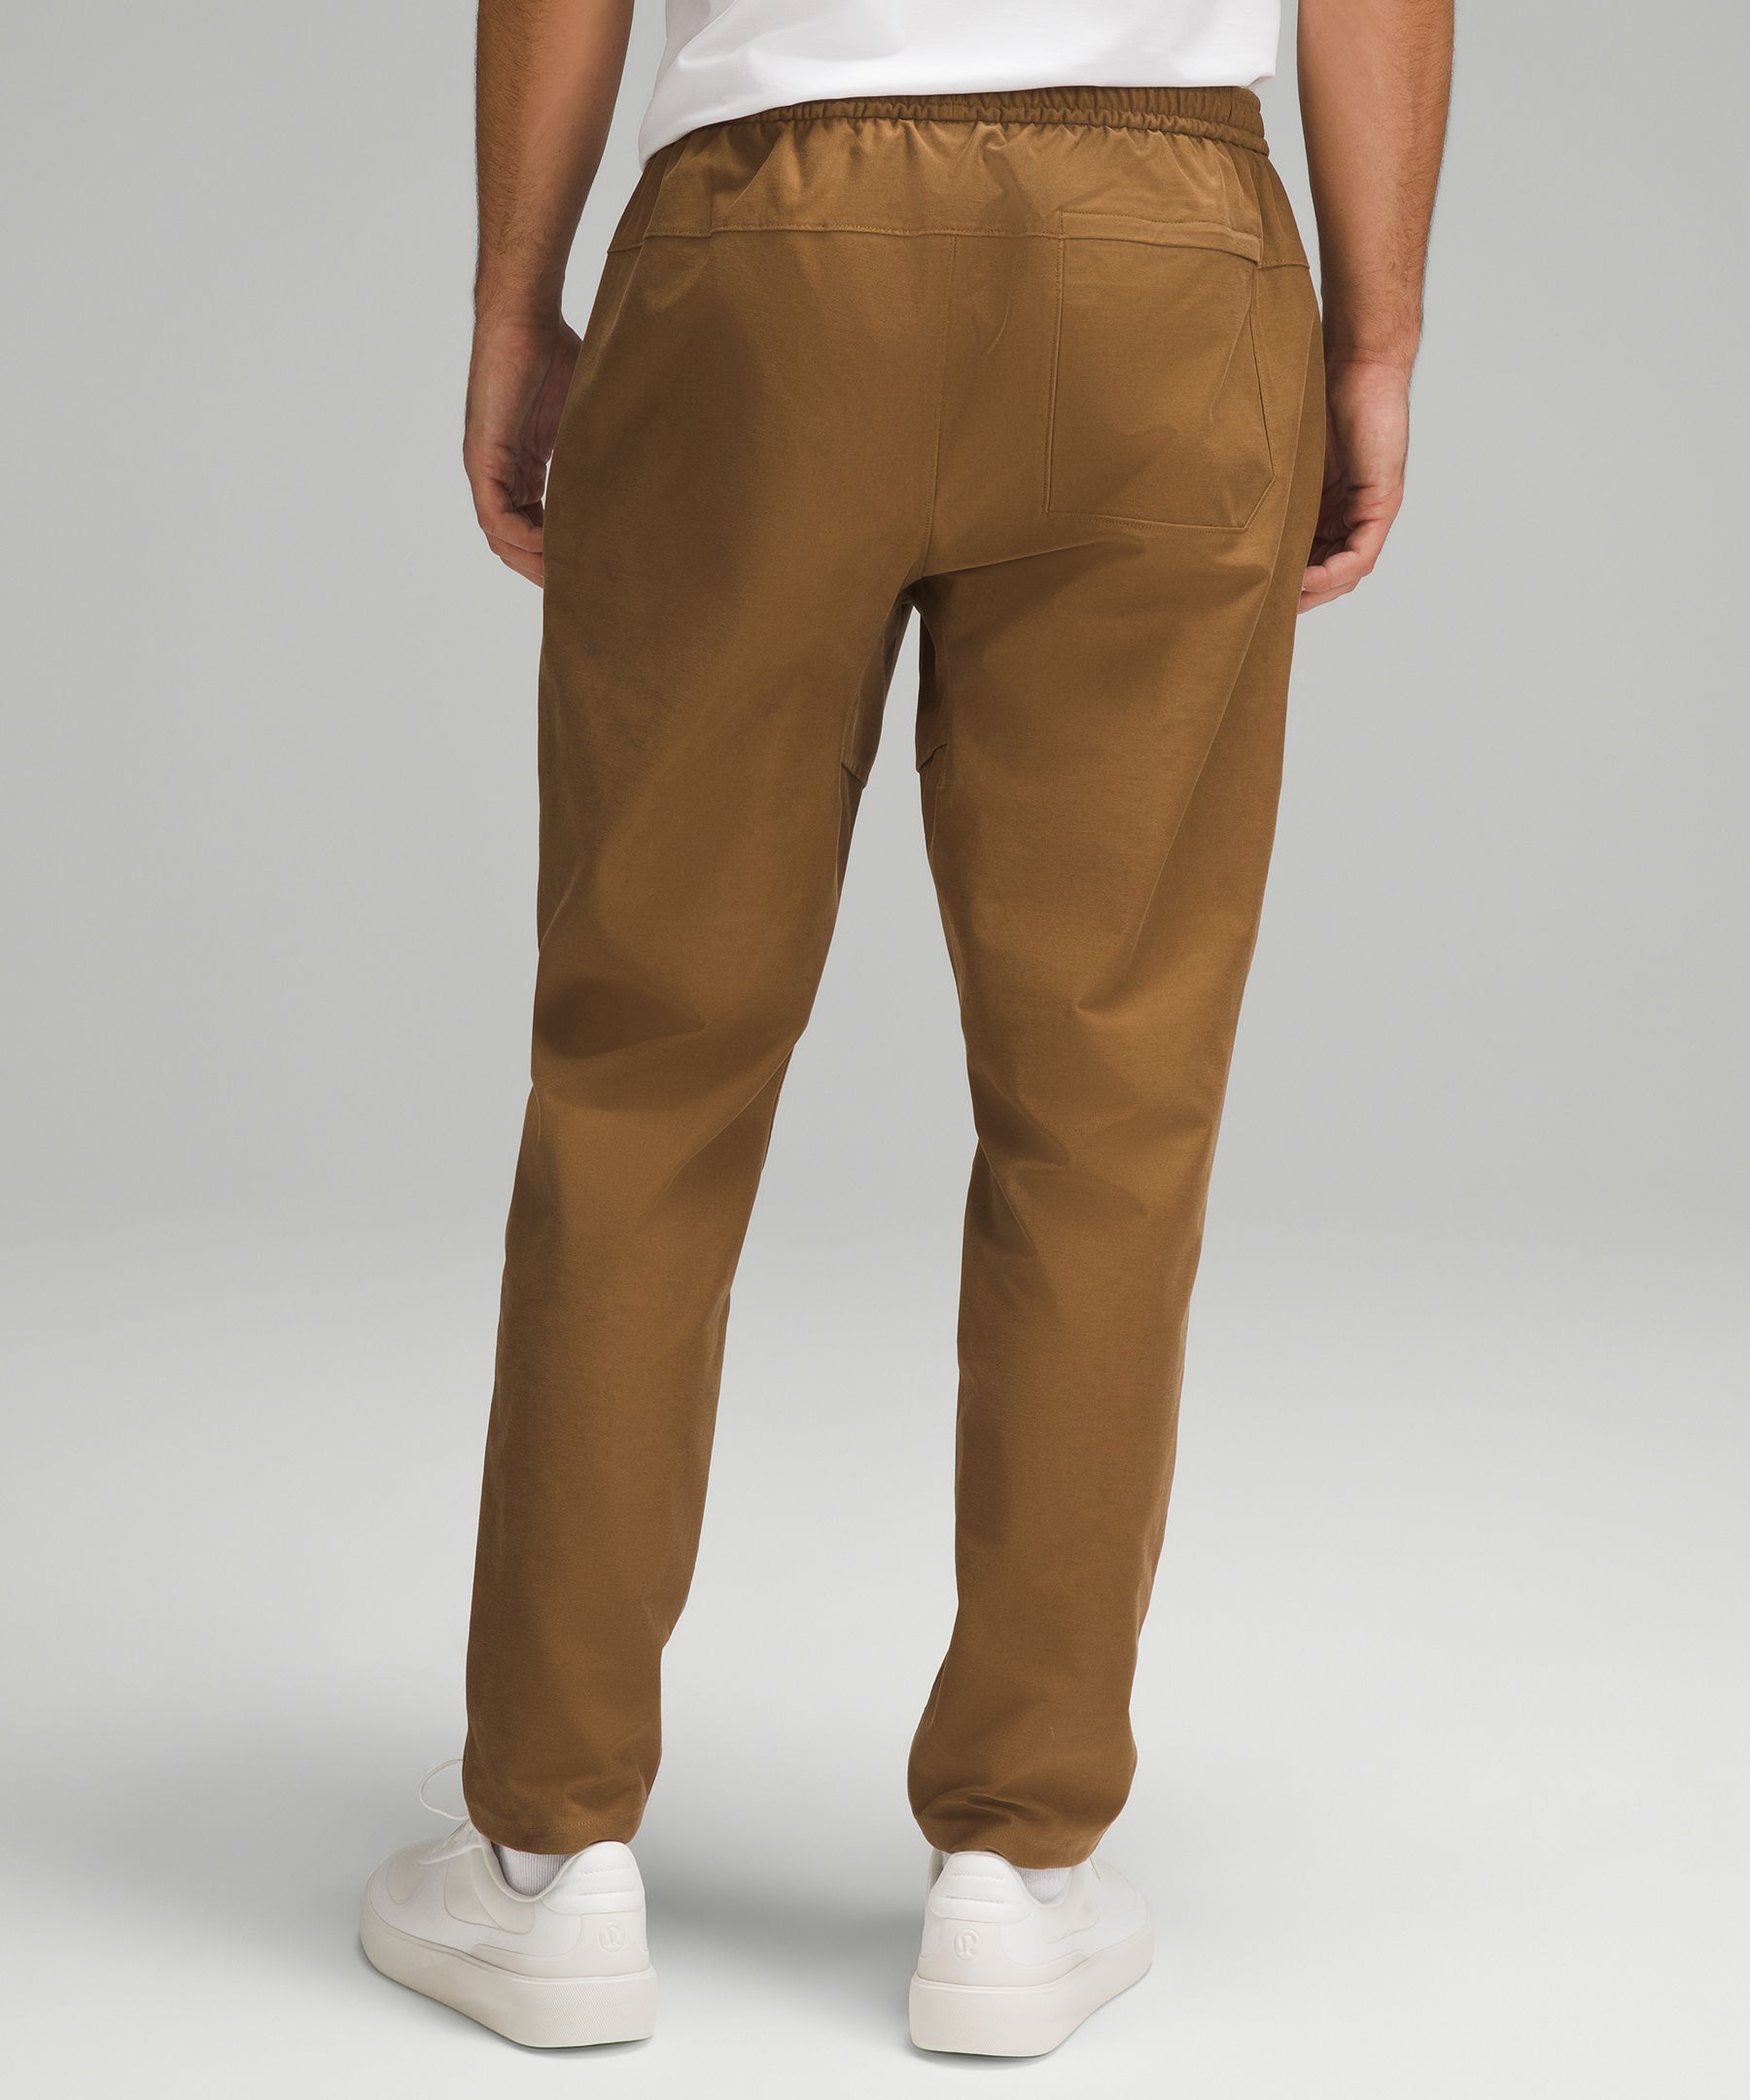 Shop Lululemon Utilitech Classic-fit Pull-on Pants